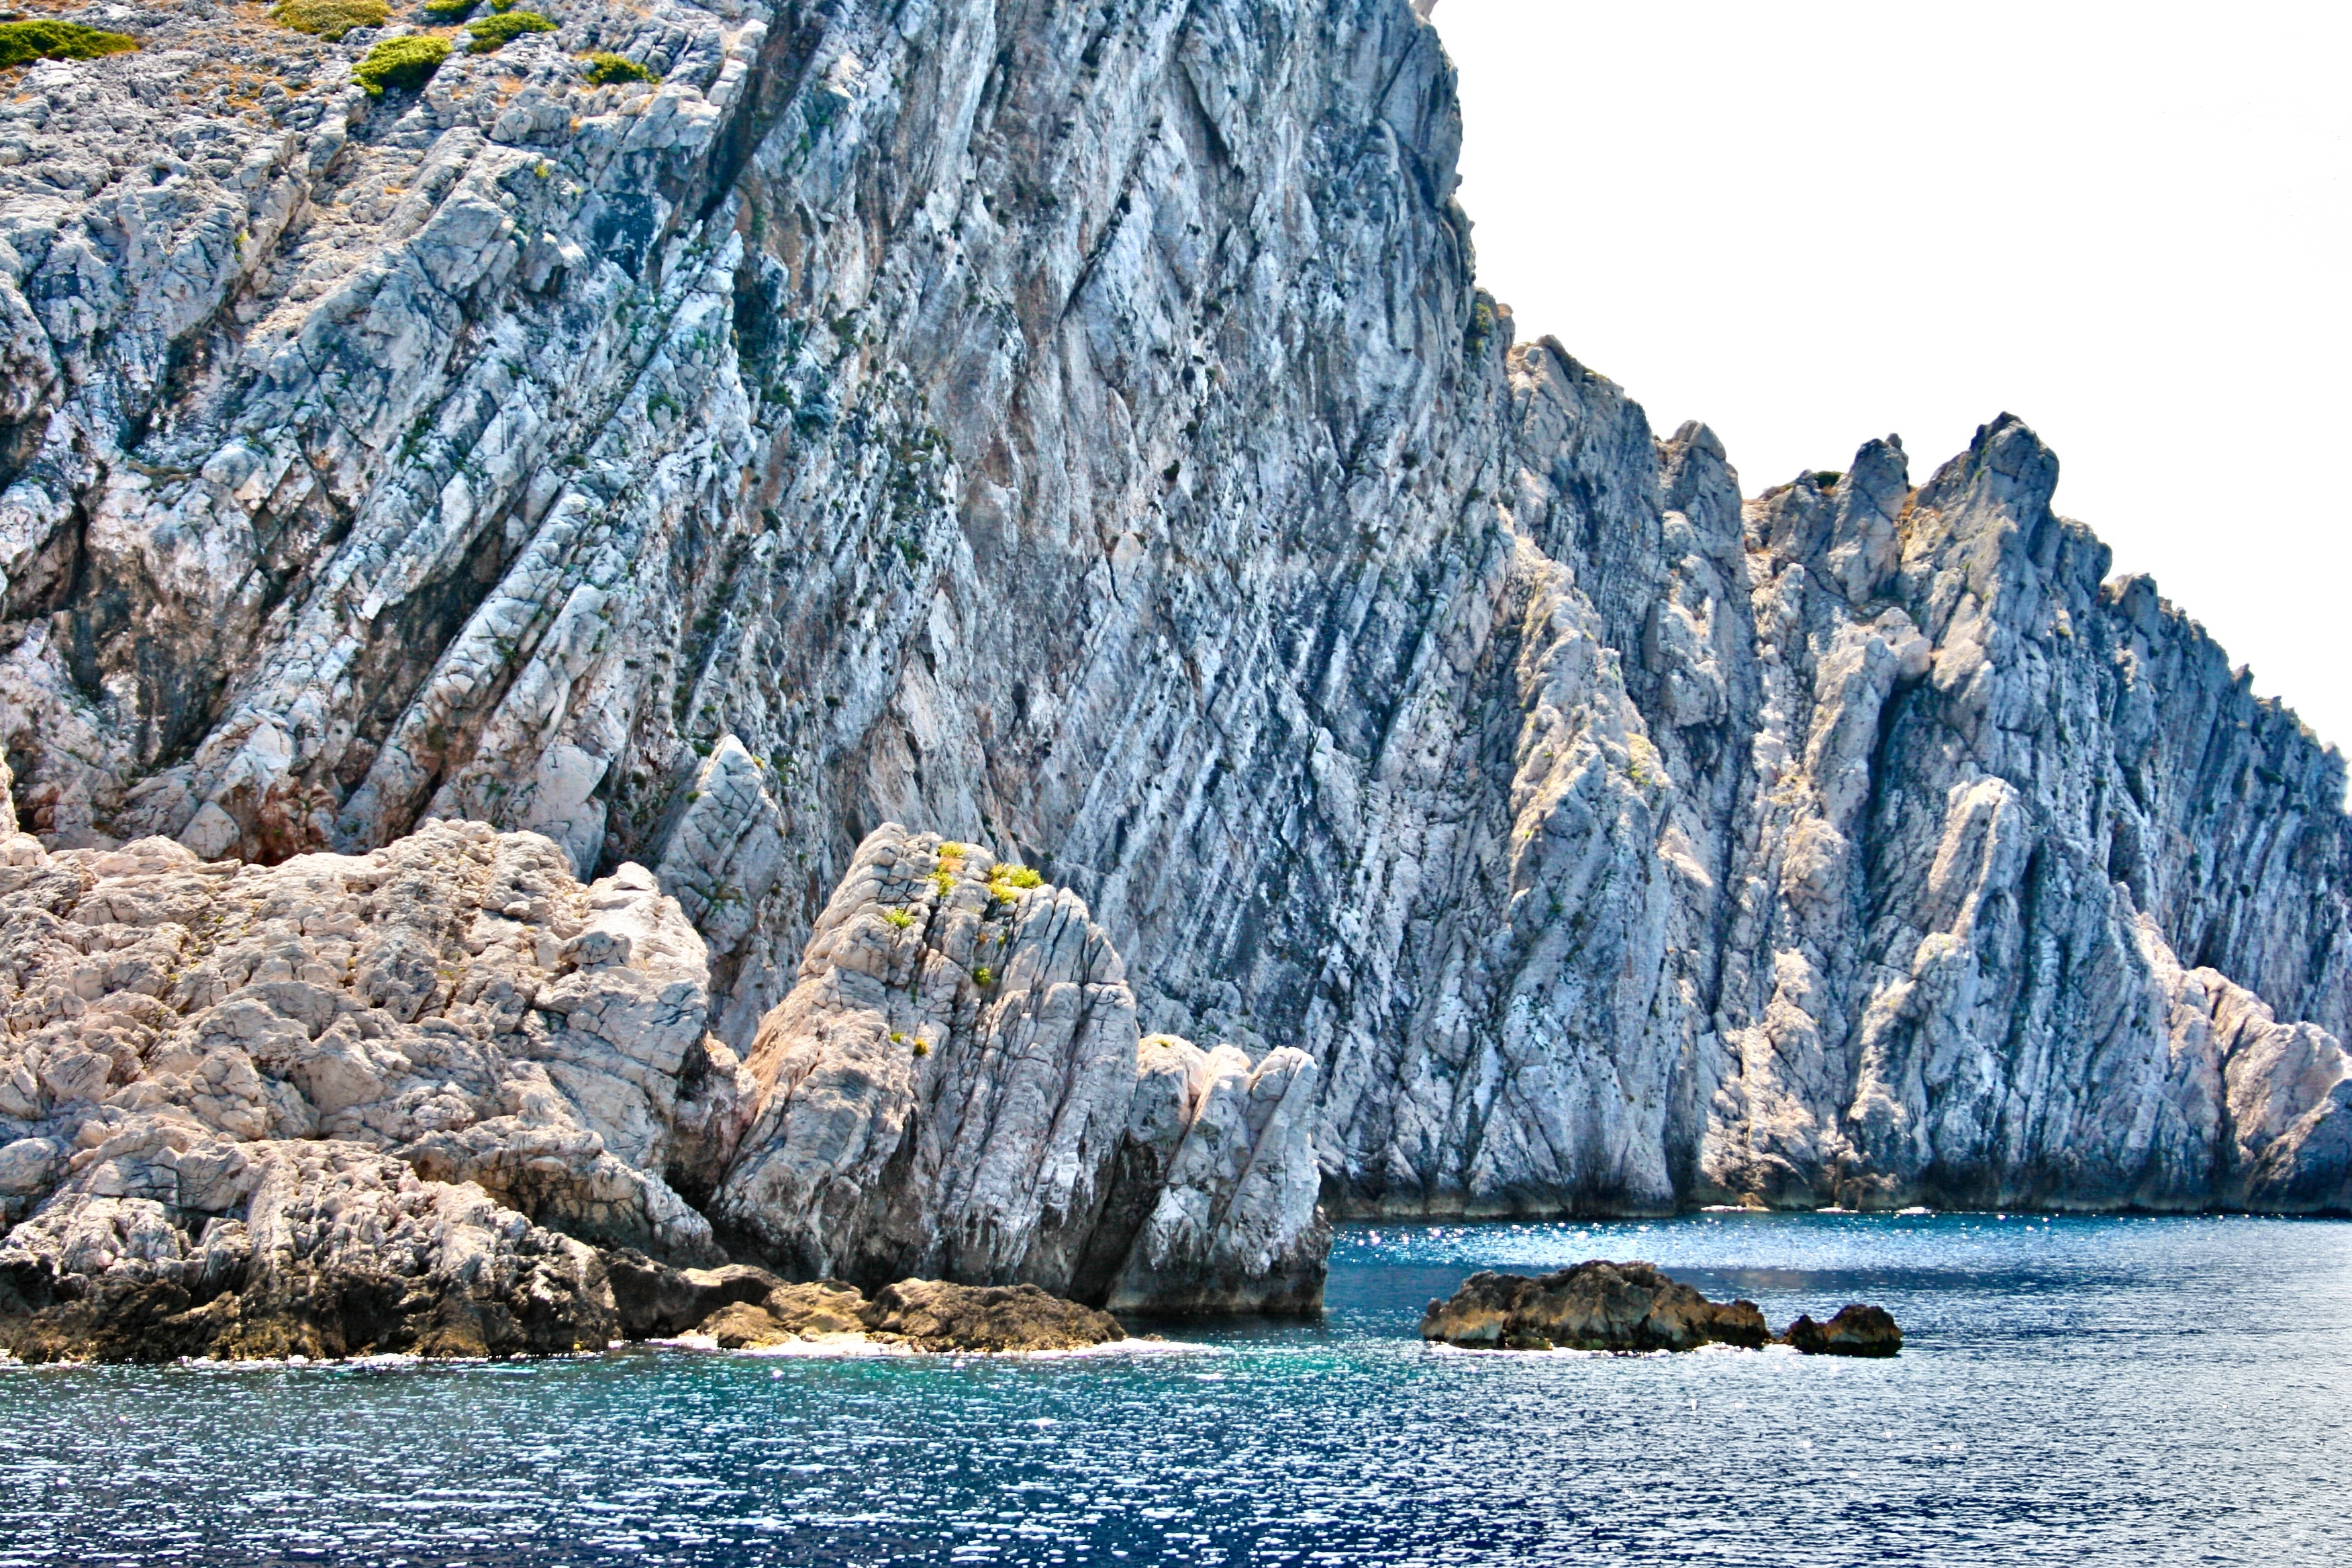 Sea, Stone, Rock, Croatia, Europe, Coast, nature, no people